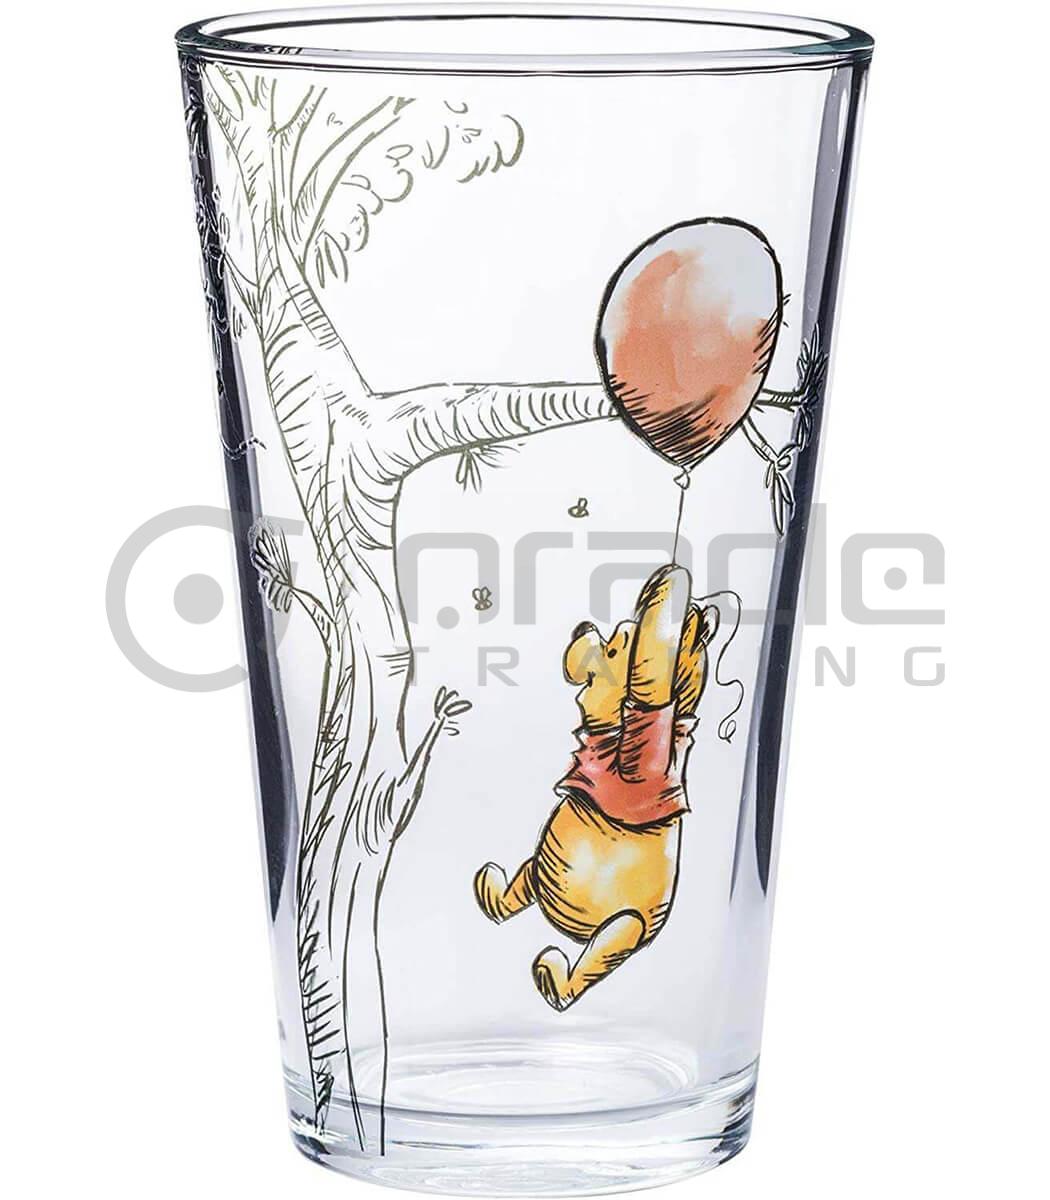 pint glass set winnie the pooh gbx224 d